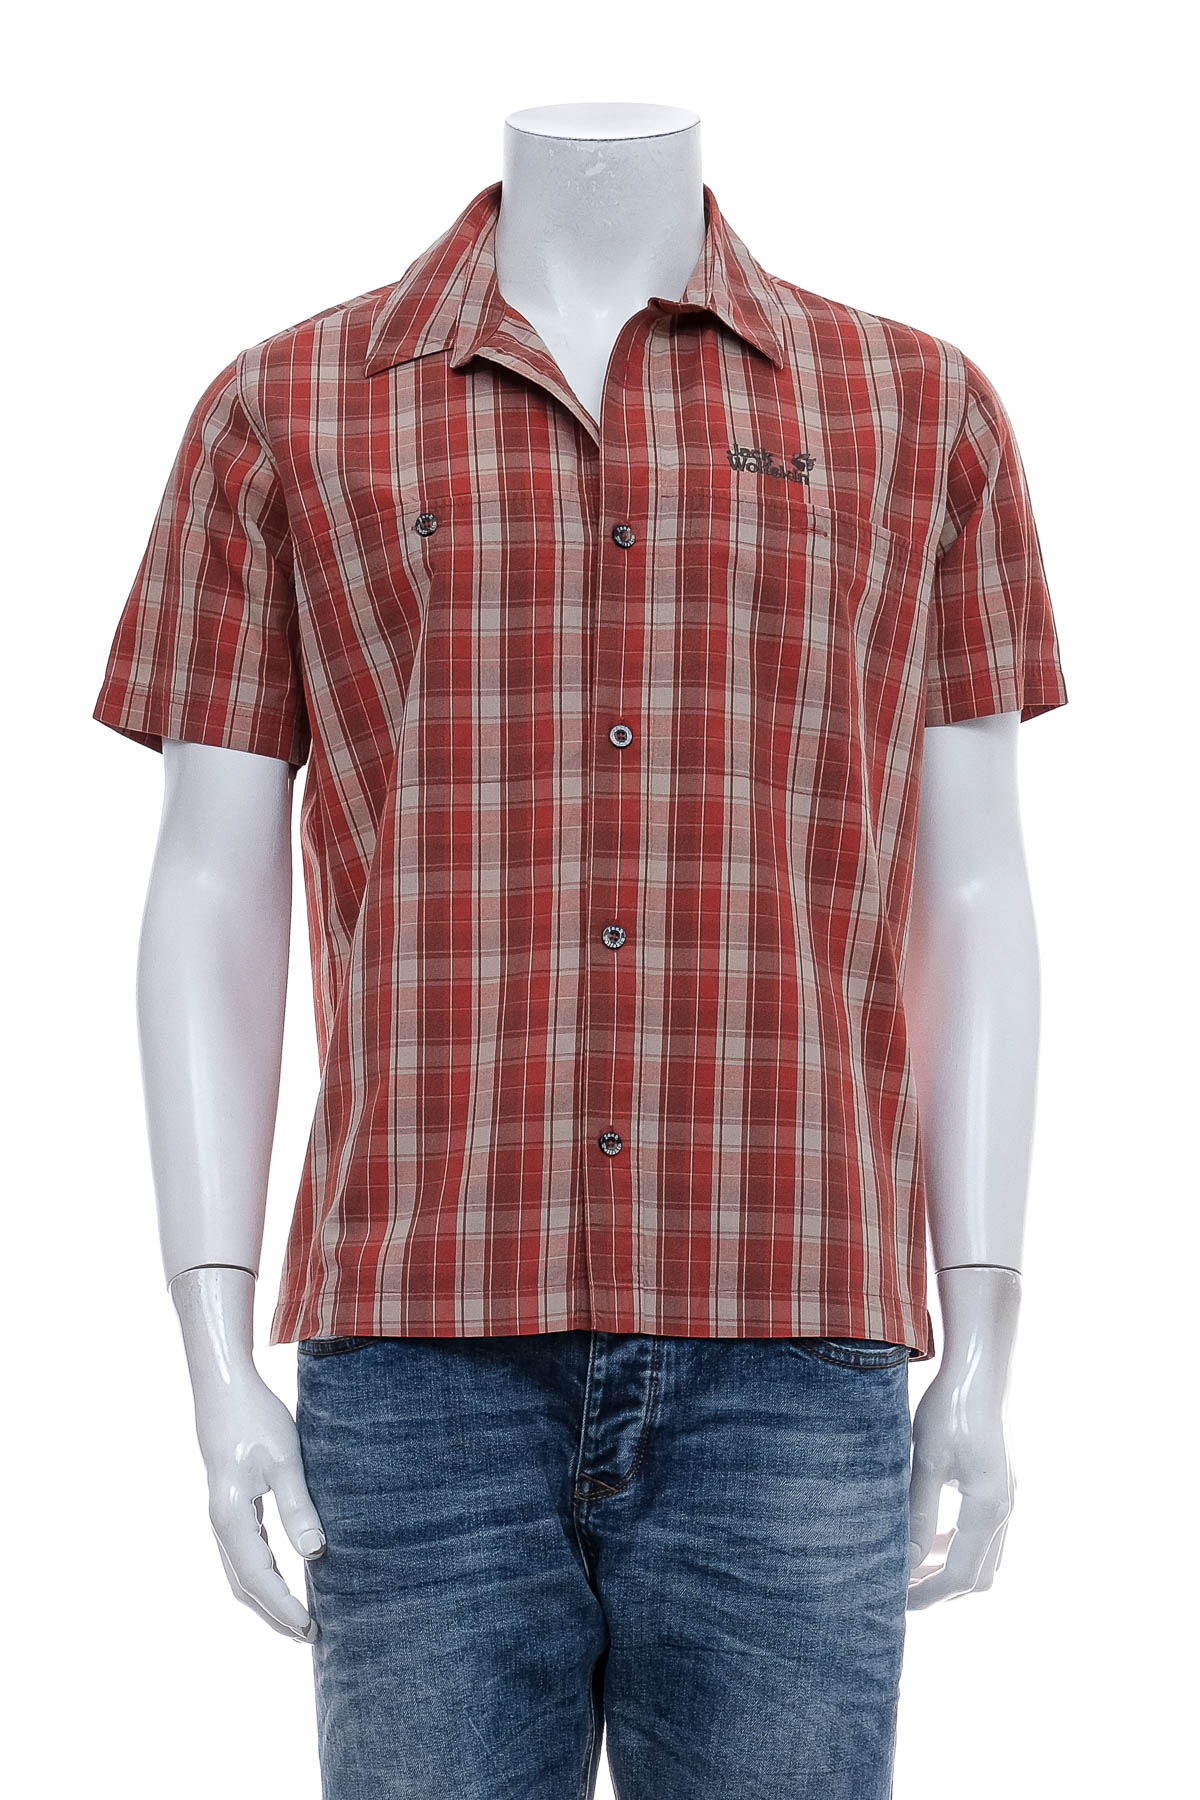 Ανδρικό πουκάμισο - Jack Wolfskin - 0